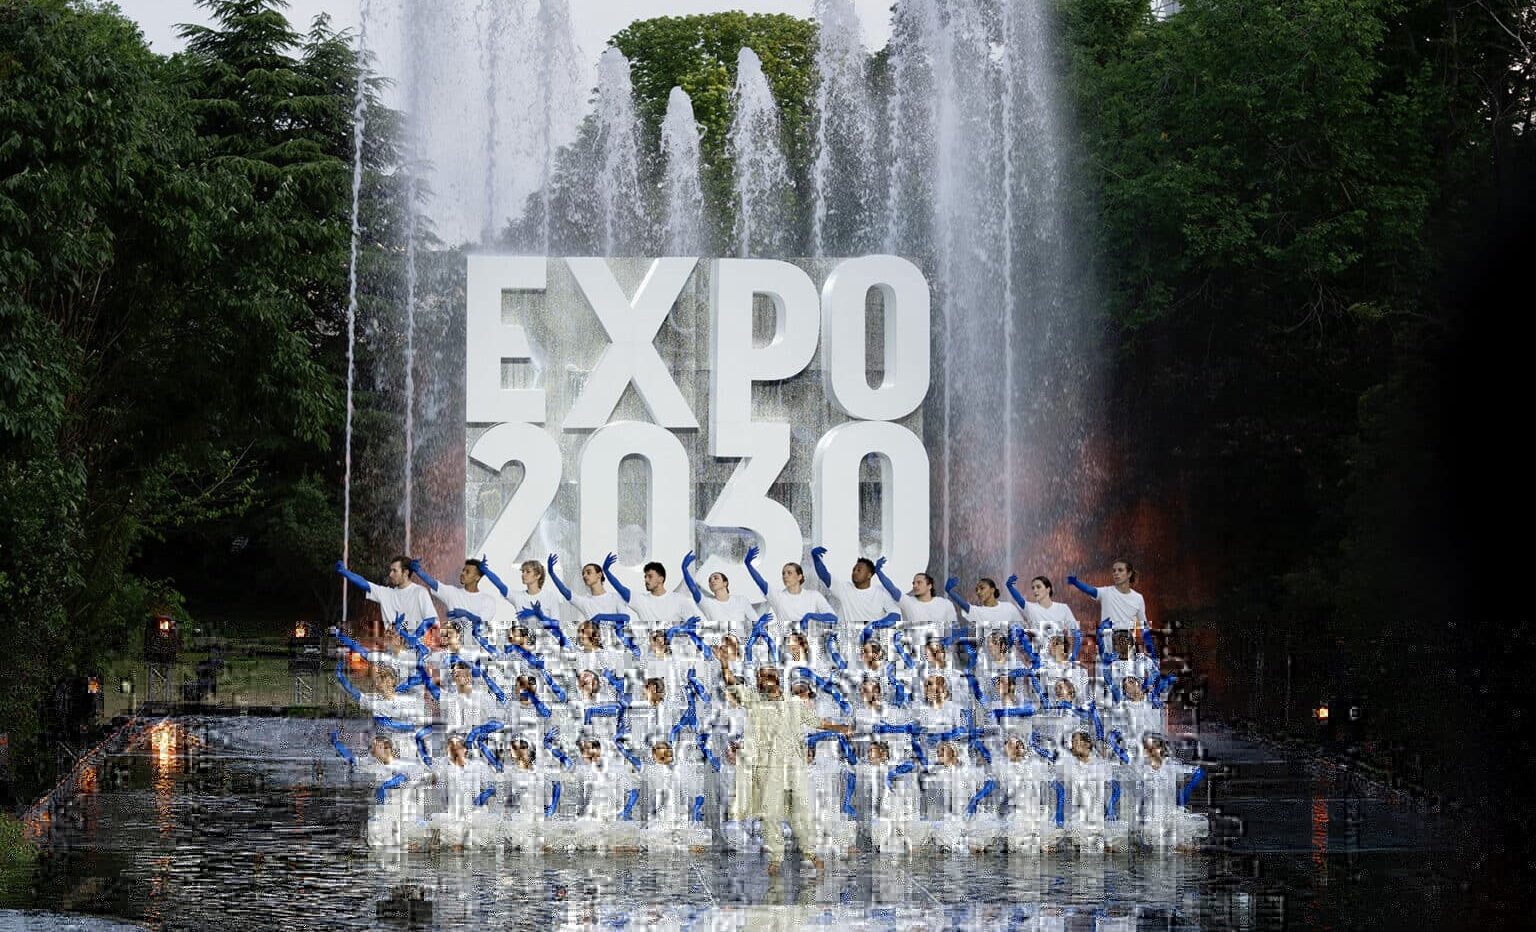 Expo 2030, il voto in diretta: Roma sconfitta e solo terza, vince Riyad al primo turno